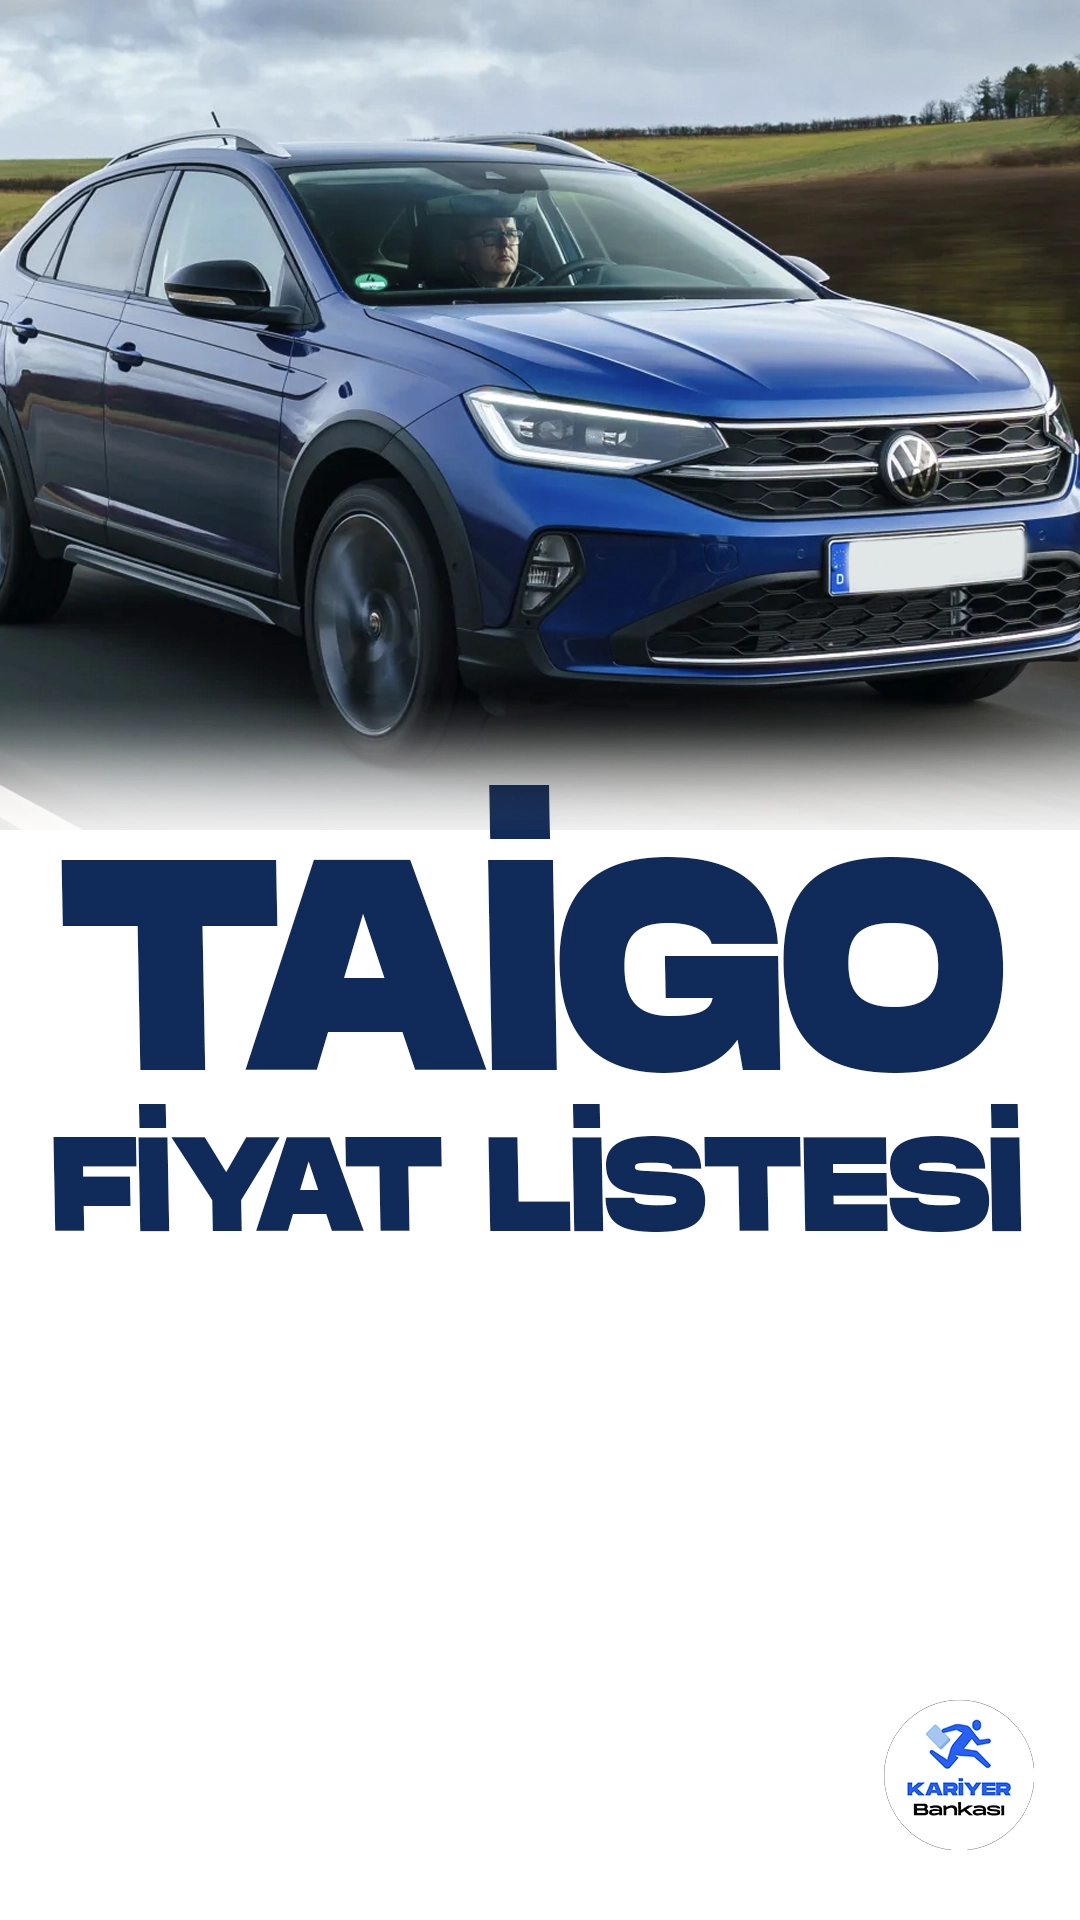 Volkswagen Taigo Kasım 2023 Fiyat Listesi Yayımlandı.Alman otomotiv devi Volkswagen, heyecan verici yeni modeli Taigo'nun Kasım fiyat listesini paylaştı.Kompakt SUV segmentinde iddialı bir yer edinmeyi hedefleyen Taigo, şık tasarımı ve güçlü performansıyla dikkat çekiyor. Modelin ön yüzü, markanın karakteristik tasarım dilini taşıyor ve LED farlarla modern bir görünüm kazanıyor.